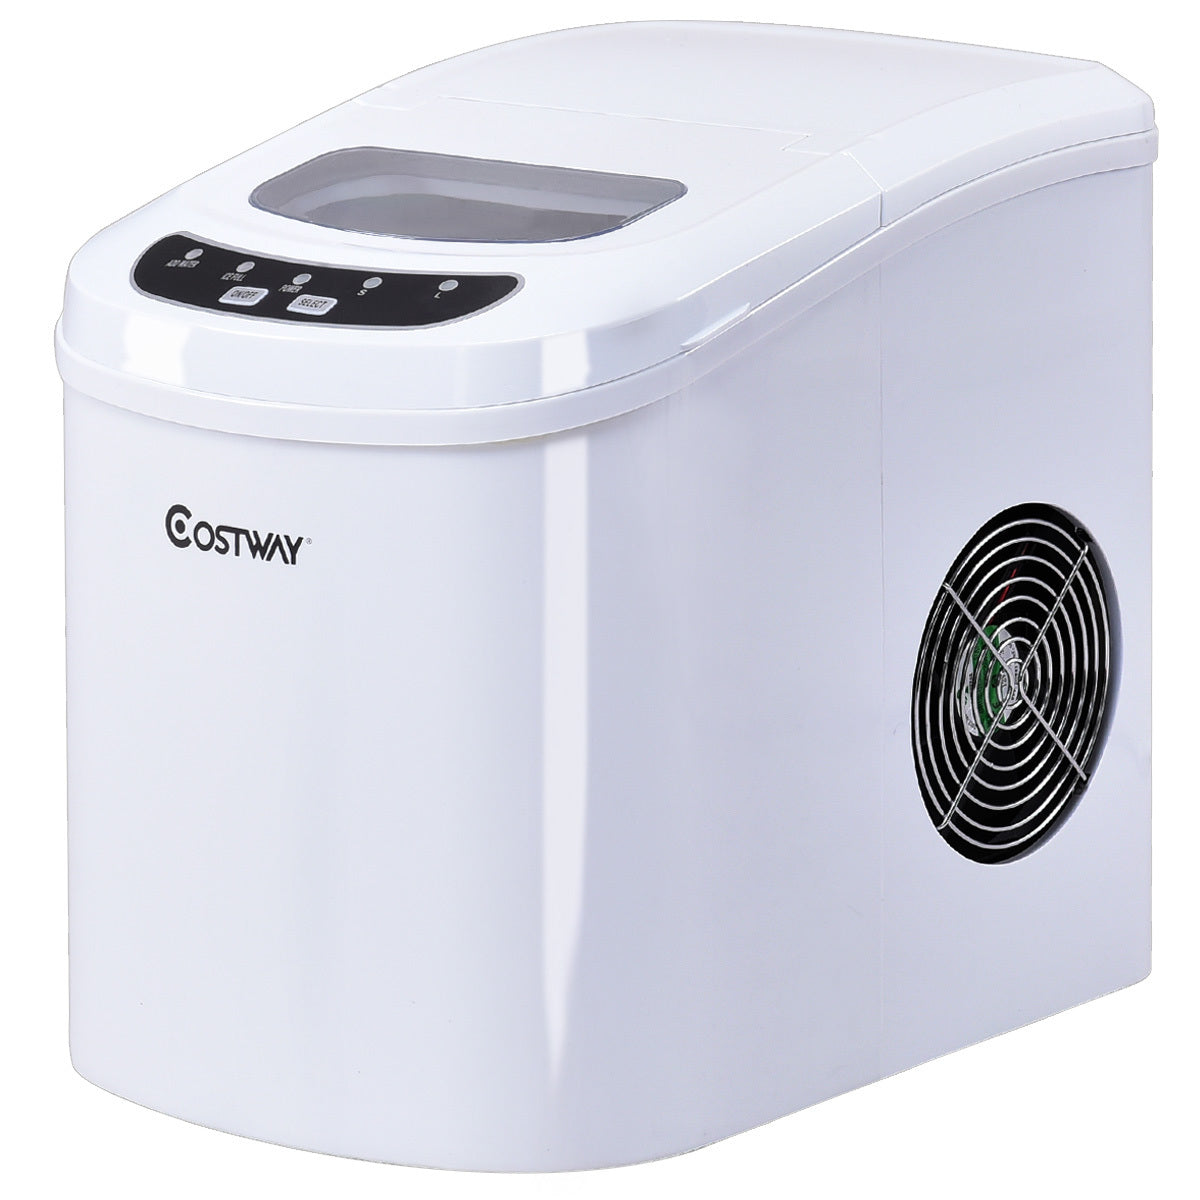 Mini Portable Compact Electric Ice Maker Machine-White - Color: White